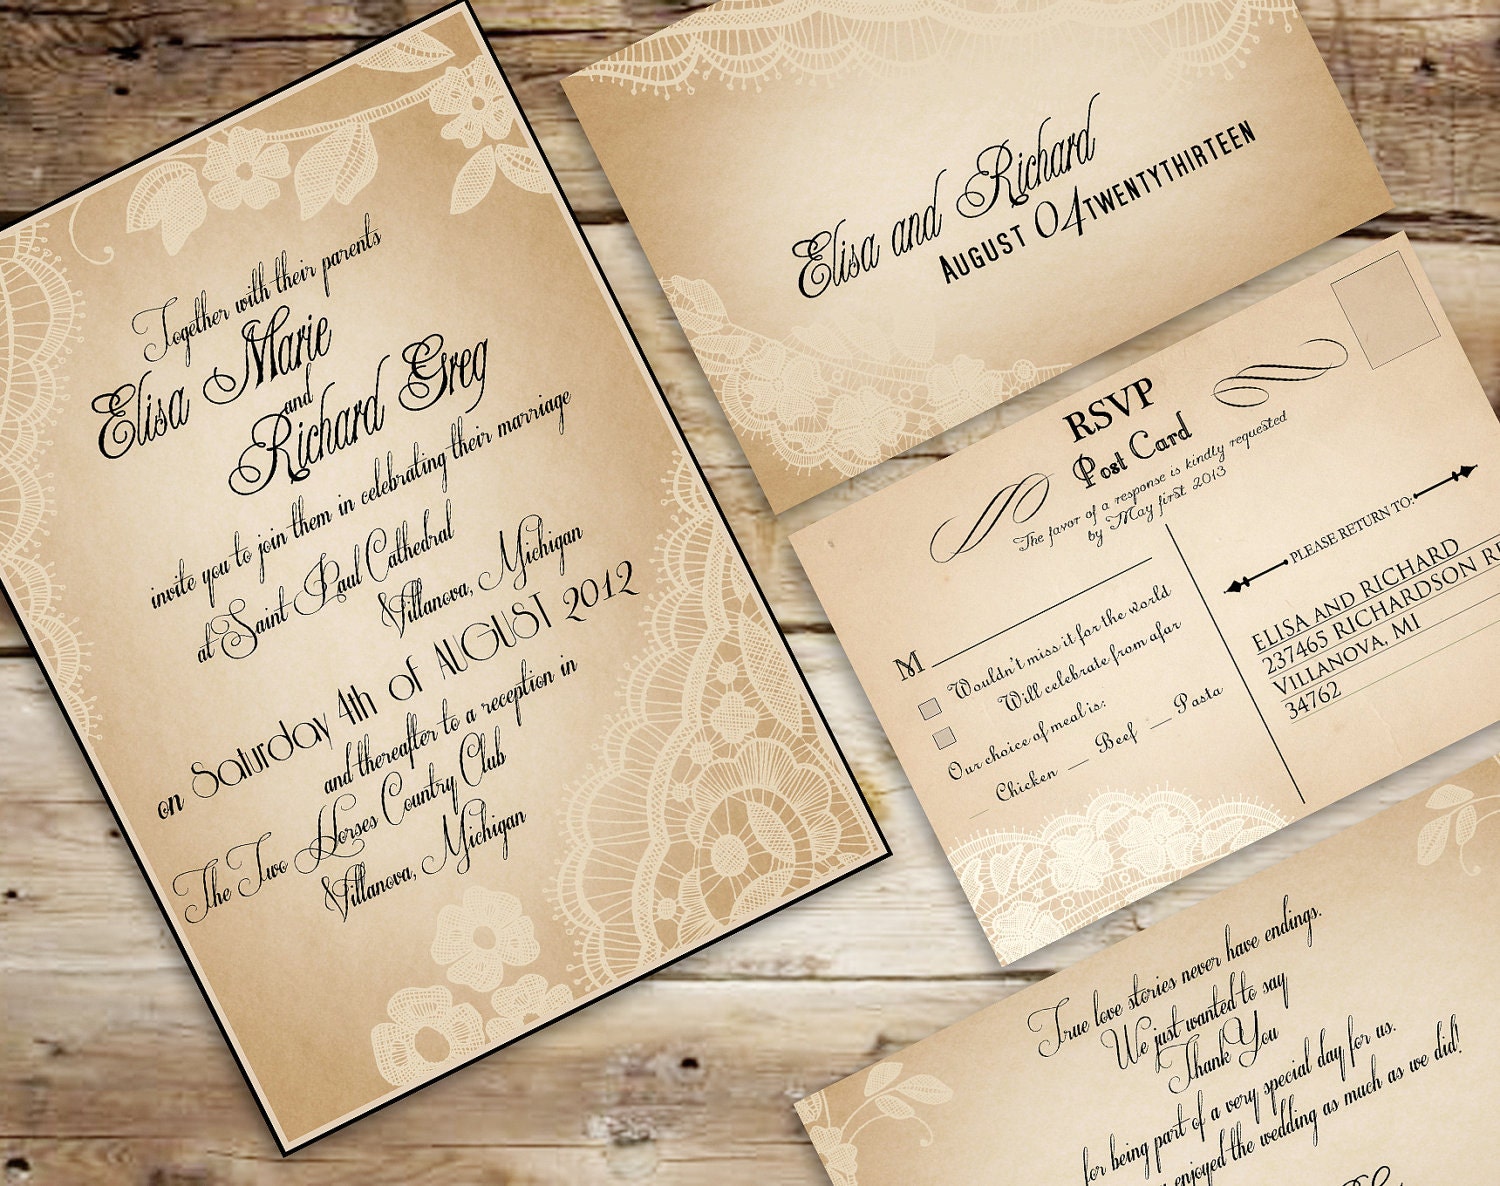 Our Invitations | Vintage wedding invitations, Vintage wedding invitations templates, Wedding